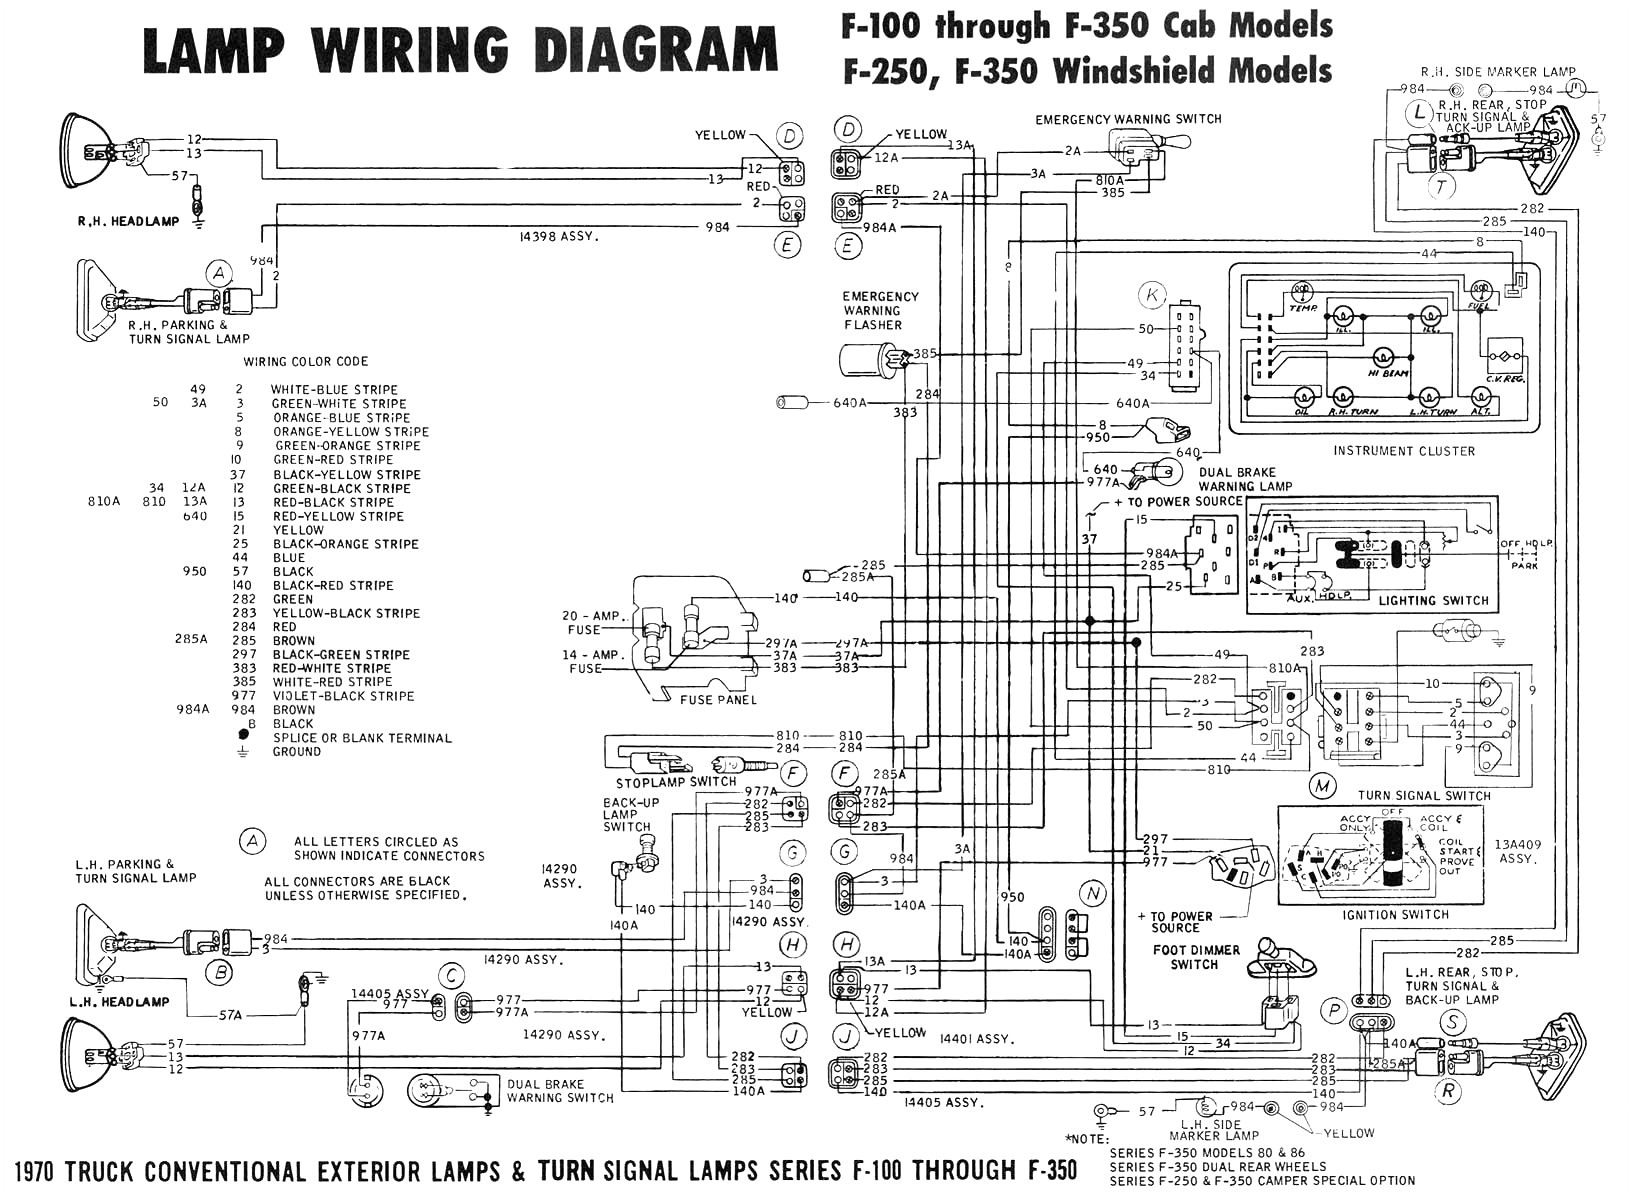 2005 ford Taurus Spark Plug Wire Diagram Taurus Schematics Ignition Wiring Diagram Meta